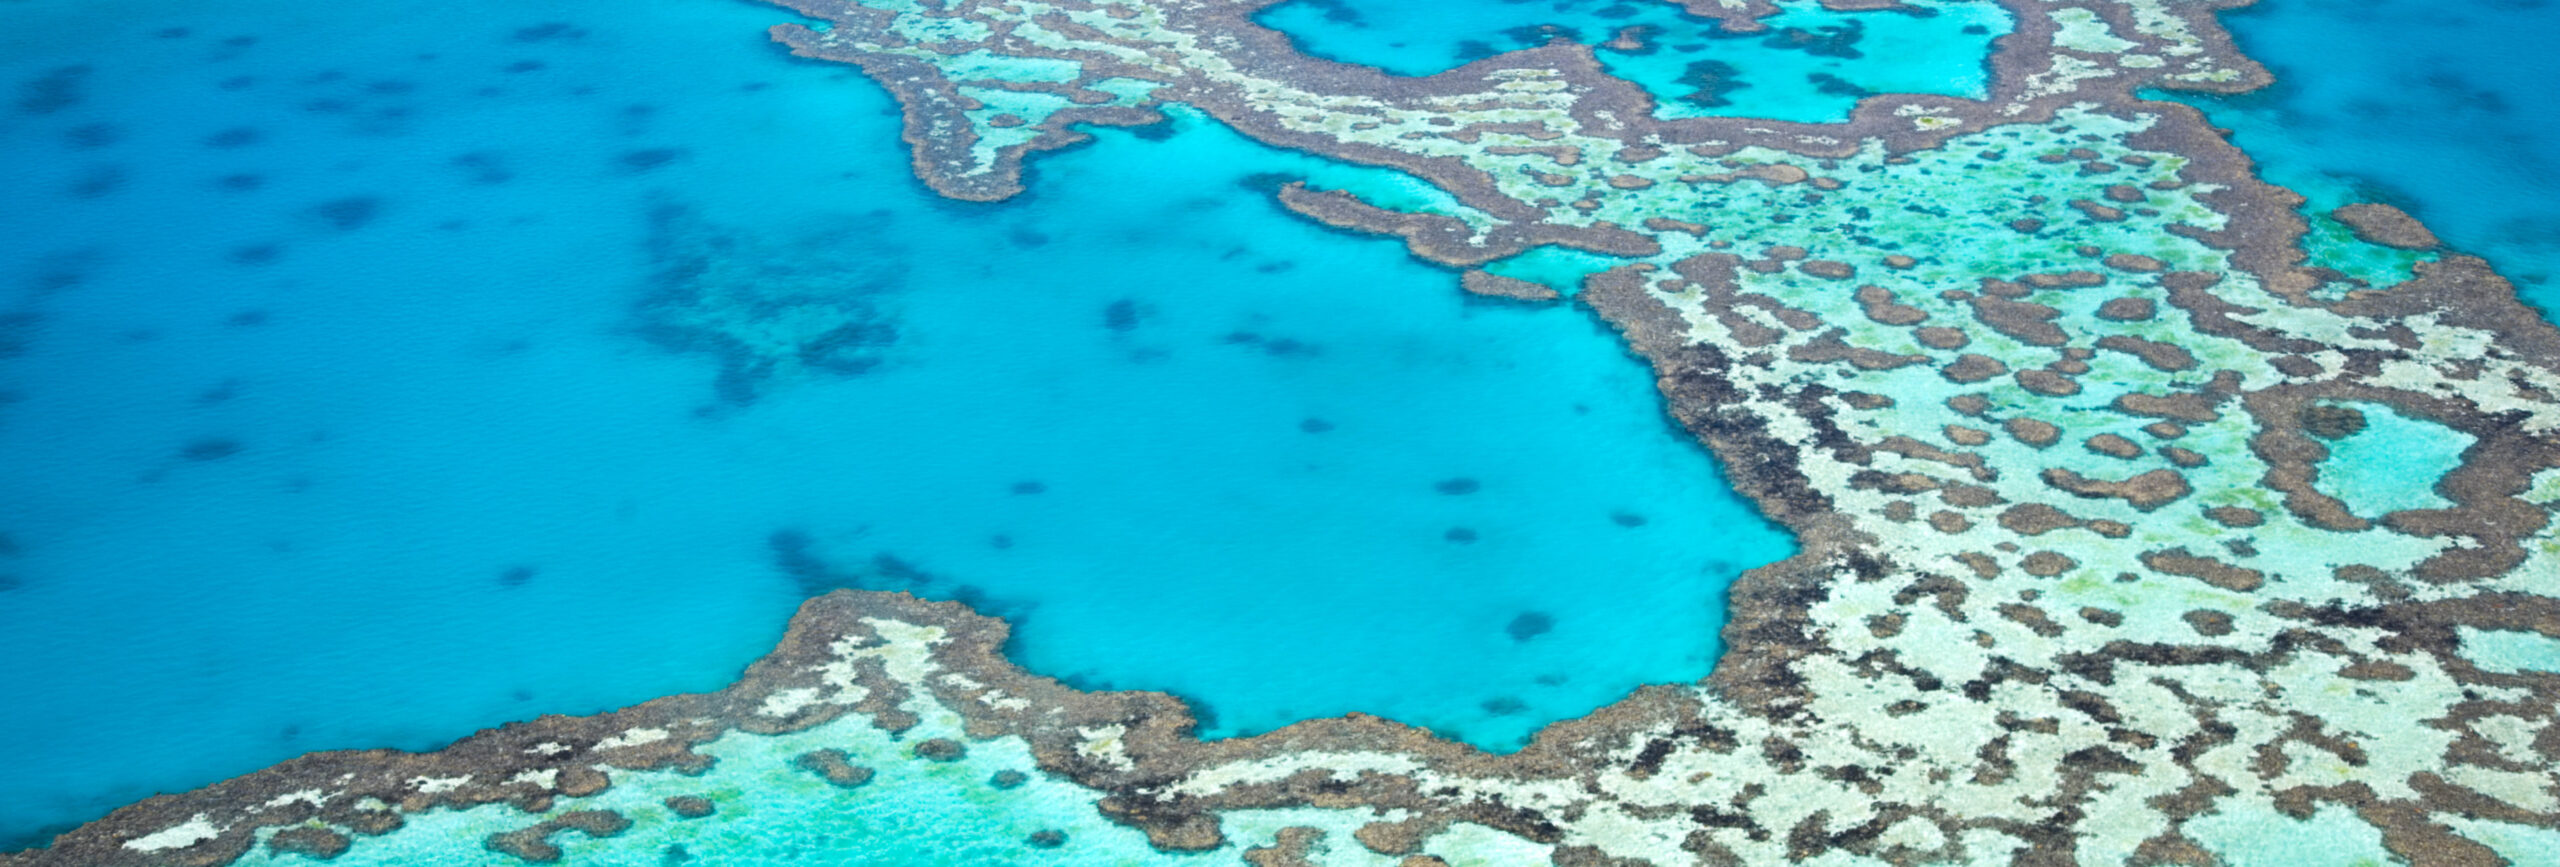 Blick auf das Great Barrier Reef, dass grösste Korallenriff der Welt - insysta